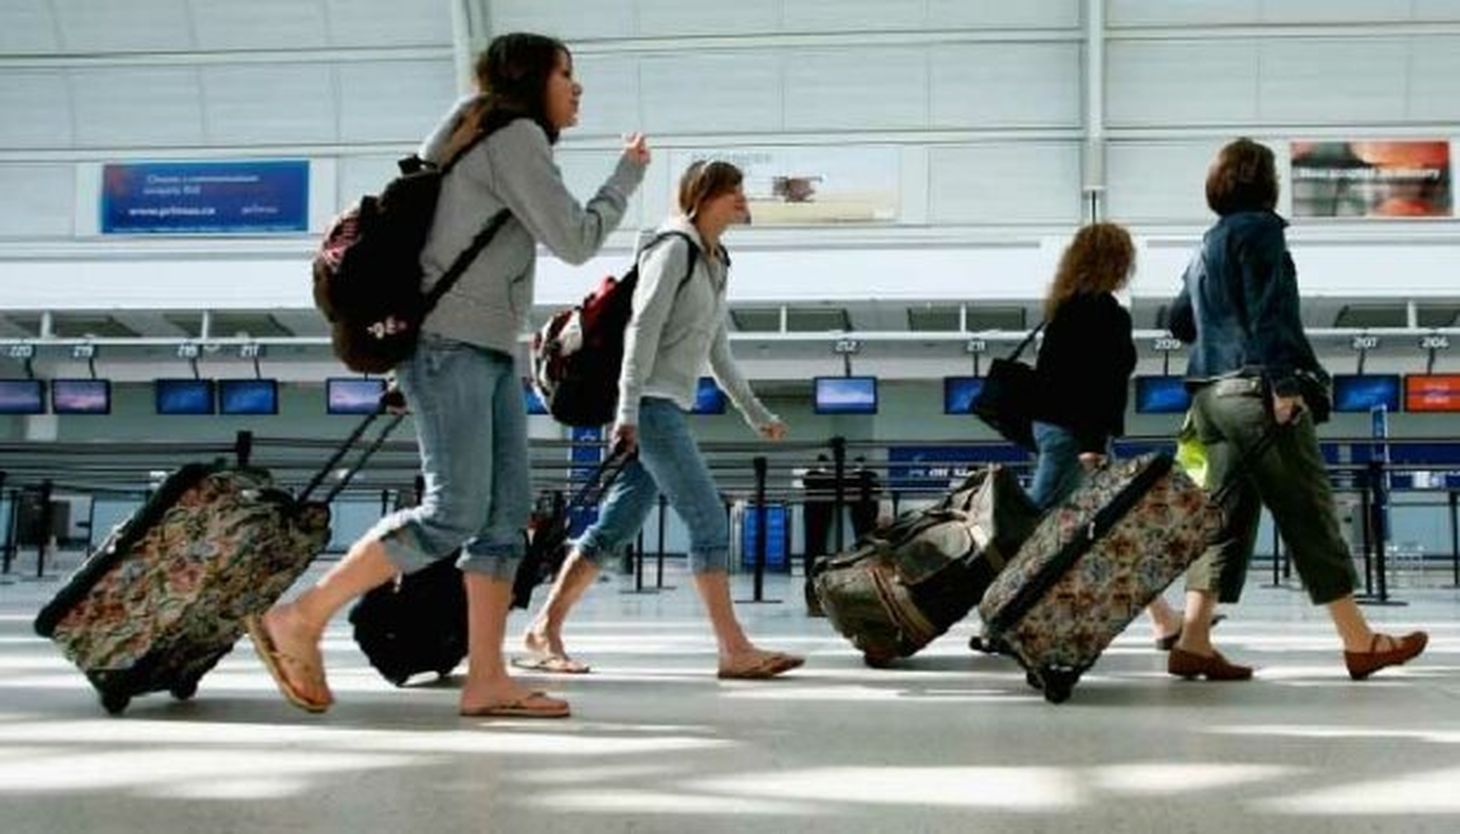 Приезжающие из заграницы. Туристы в аэропорту. Люди с чемоданами в аэропорту. Путешественник в аэропорту. Отдыхающие в аэропорту.